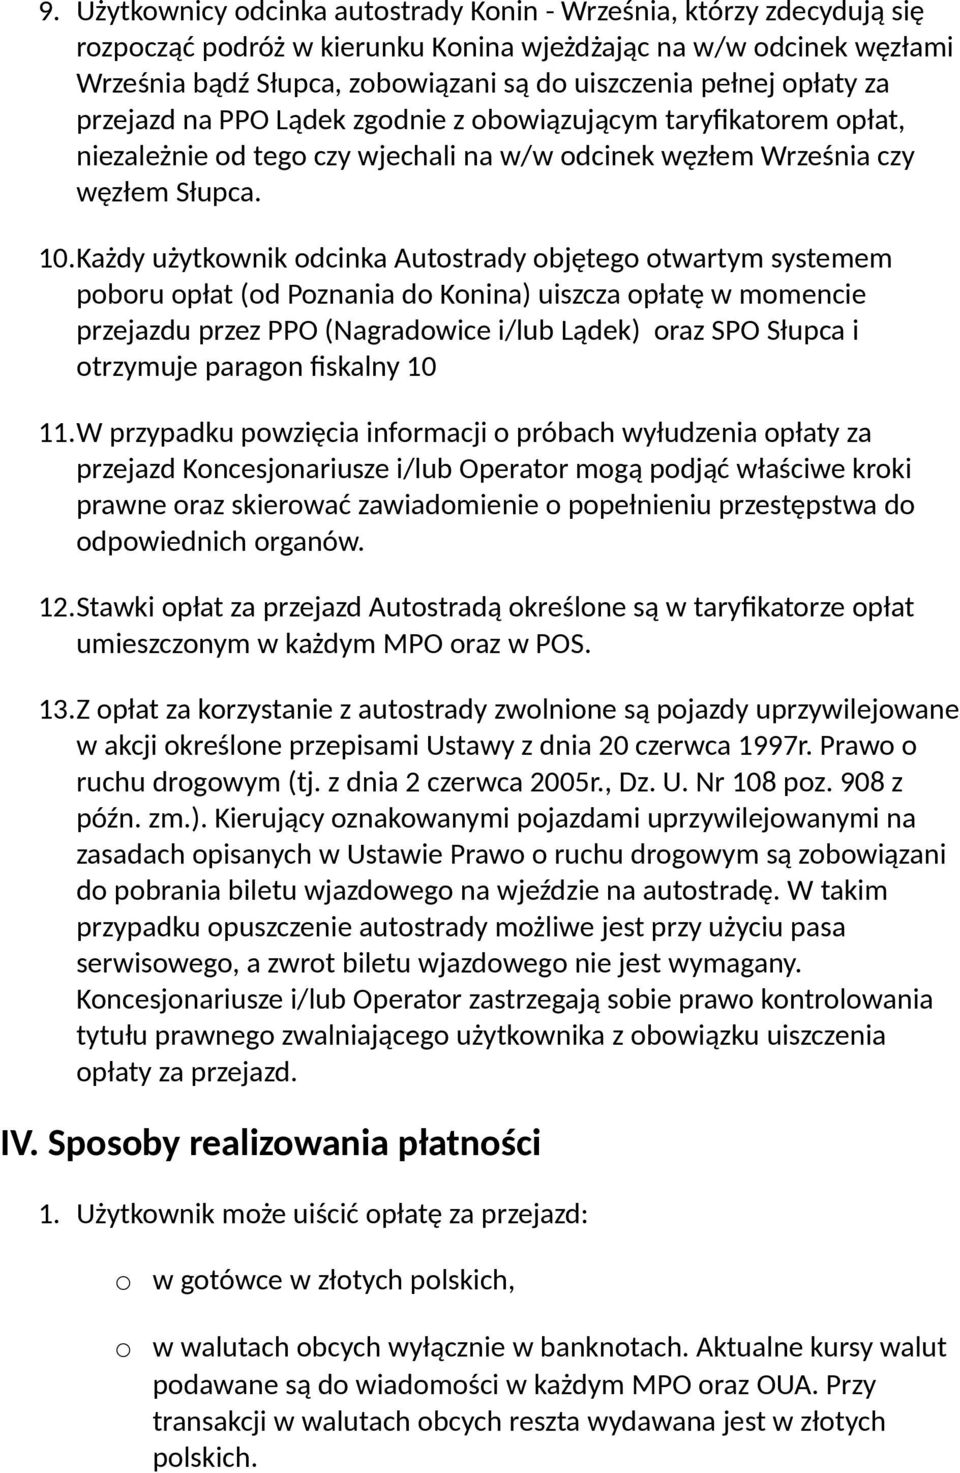 Każdy użytkownik odcinka Autostrady objętego otwartym systemem poboru opłat (od Poznania do Konina) uiszcza opłatę w momencie przejazdu przez PPO (Nagradowice i/lub Lądek) oraz SPO Słupca i otrzymuje